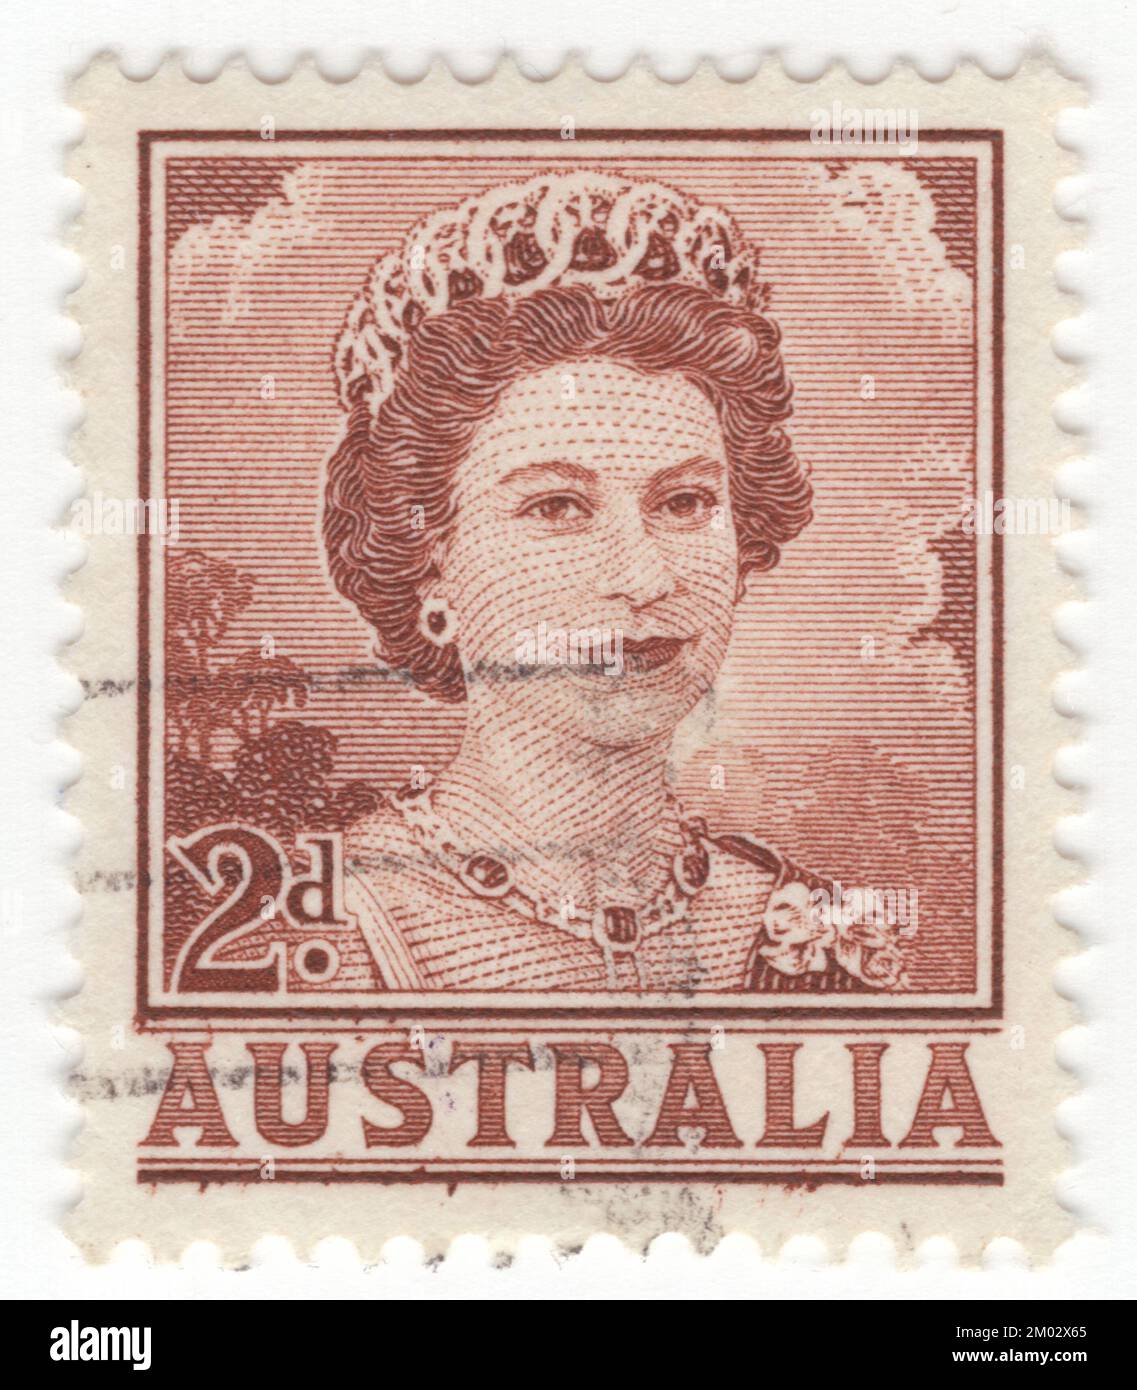 AUSTRALIE — 1962 21 mars: Timbre-poste brun rouge de 2 pence représentant des portraits de la reine Élisabeth II, monarque dominant de l'Australie. Elizabeth II (Elizabeth Alexandra Mary) fut reine du Royaume-Uni et d'autres royaumes du Commonwealth du 6 février 1952 jusqu'à sa mort en 2022. Elle était reine régnant de 32 États souverains au cours de sa vie, et était chef d'état de 15 royaumes au moment de sa mort. Son règne de 70 ans et 214 jours fut le plus long de tout monarque britannique et le plus long règne vérifié de tout monarque féminin de l'histoire Banque D'Images